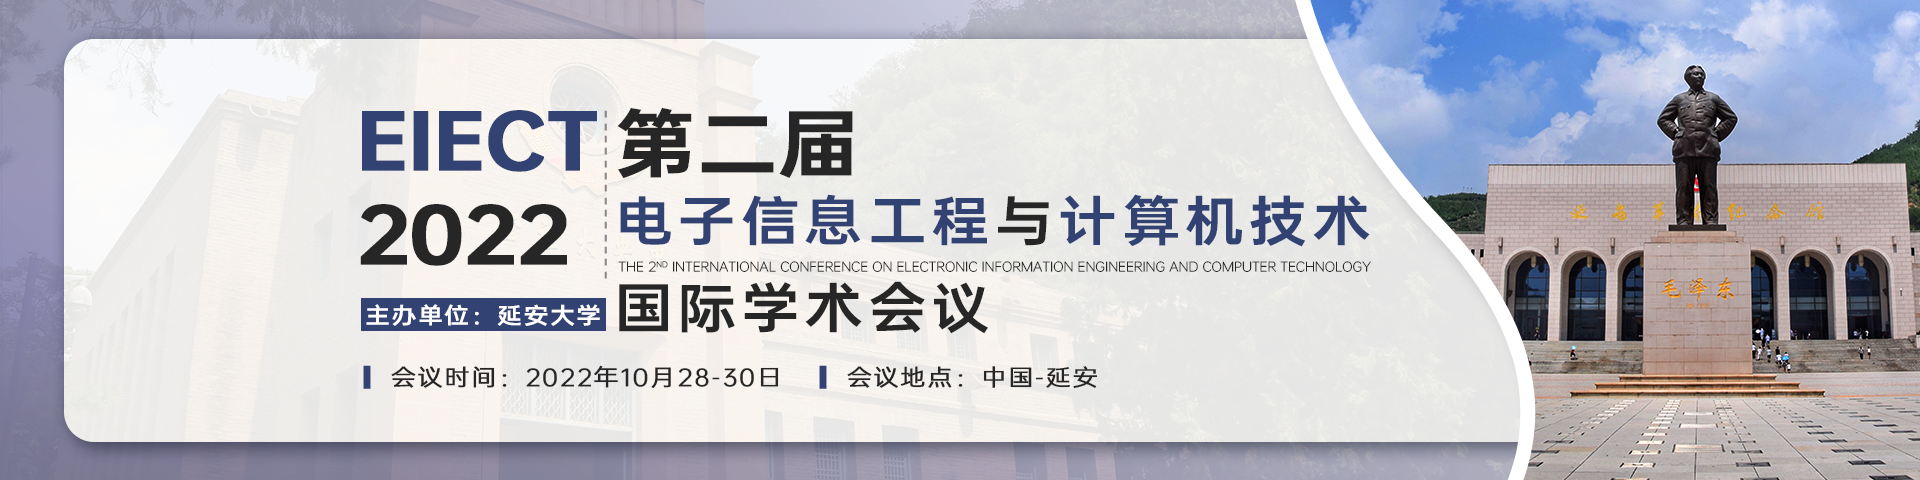 10月延安EIECT2021-会议艾思banner-何雪仪-20220117.png